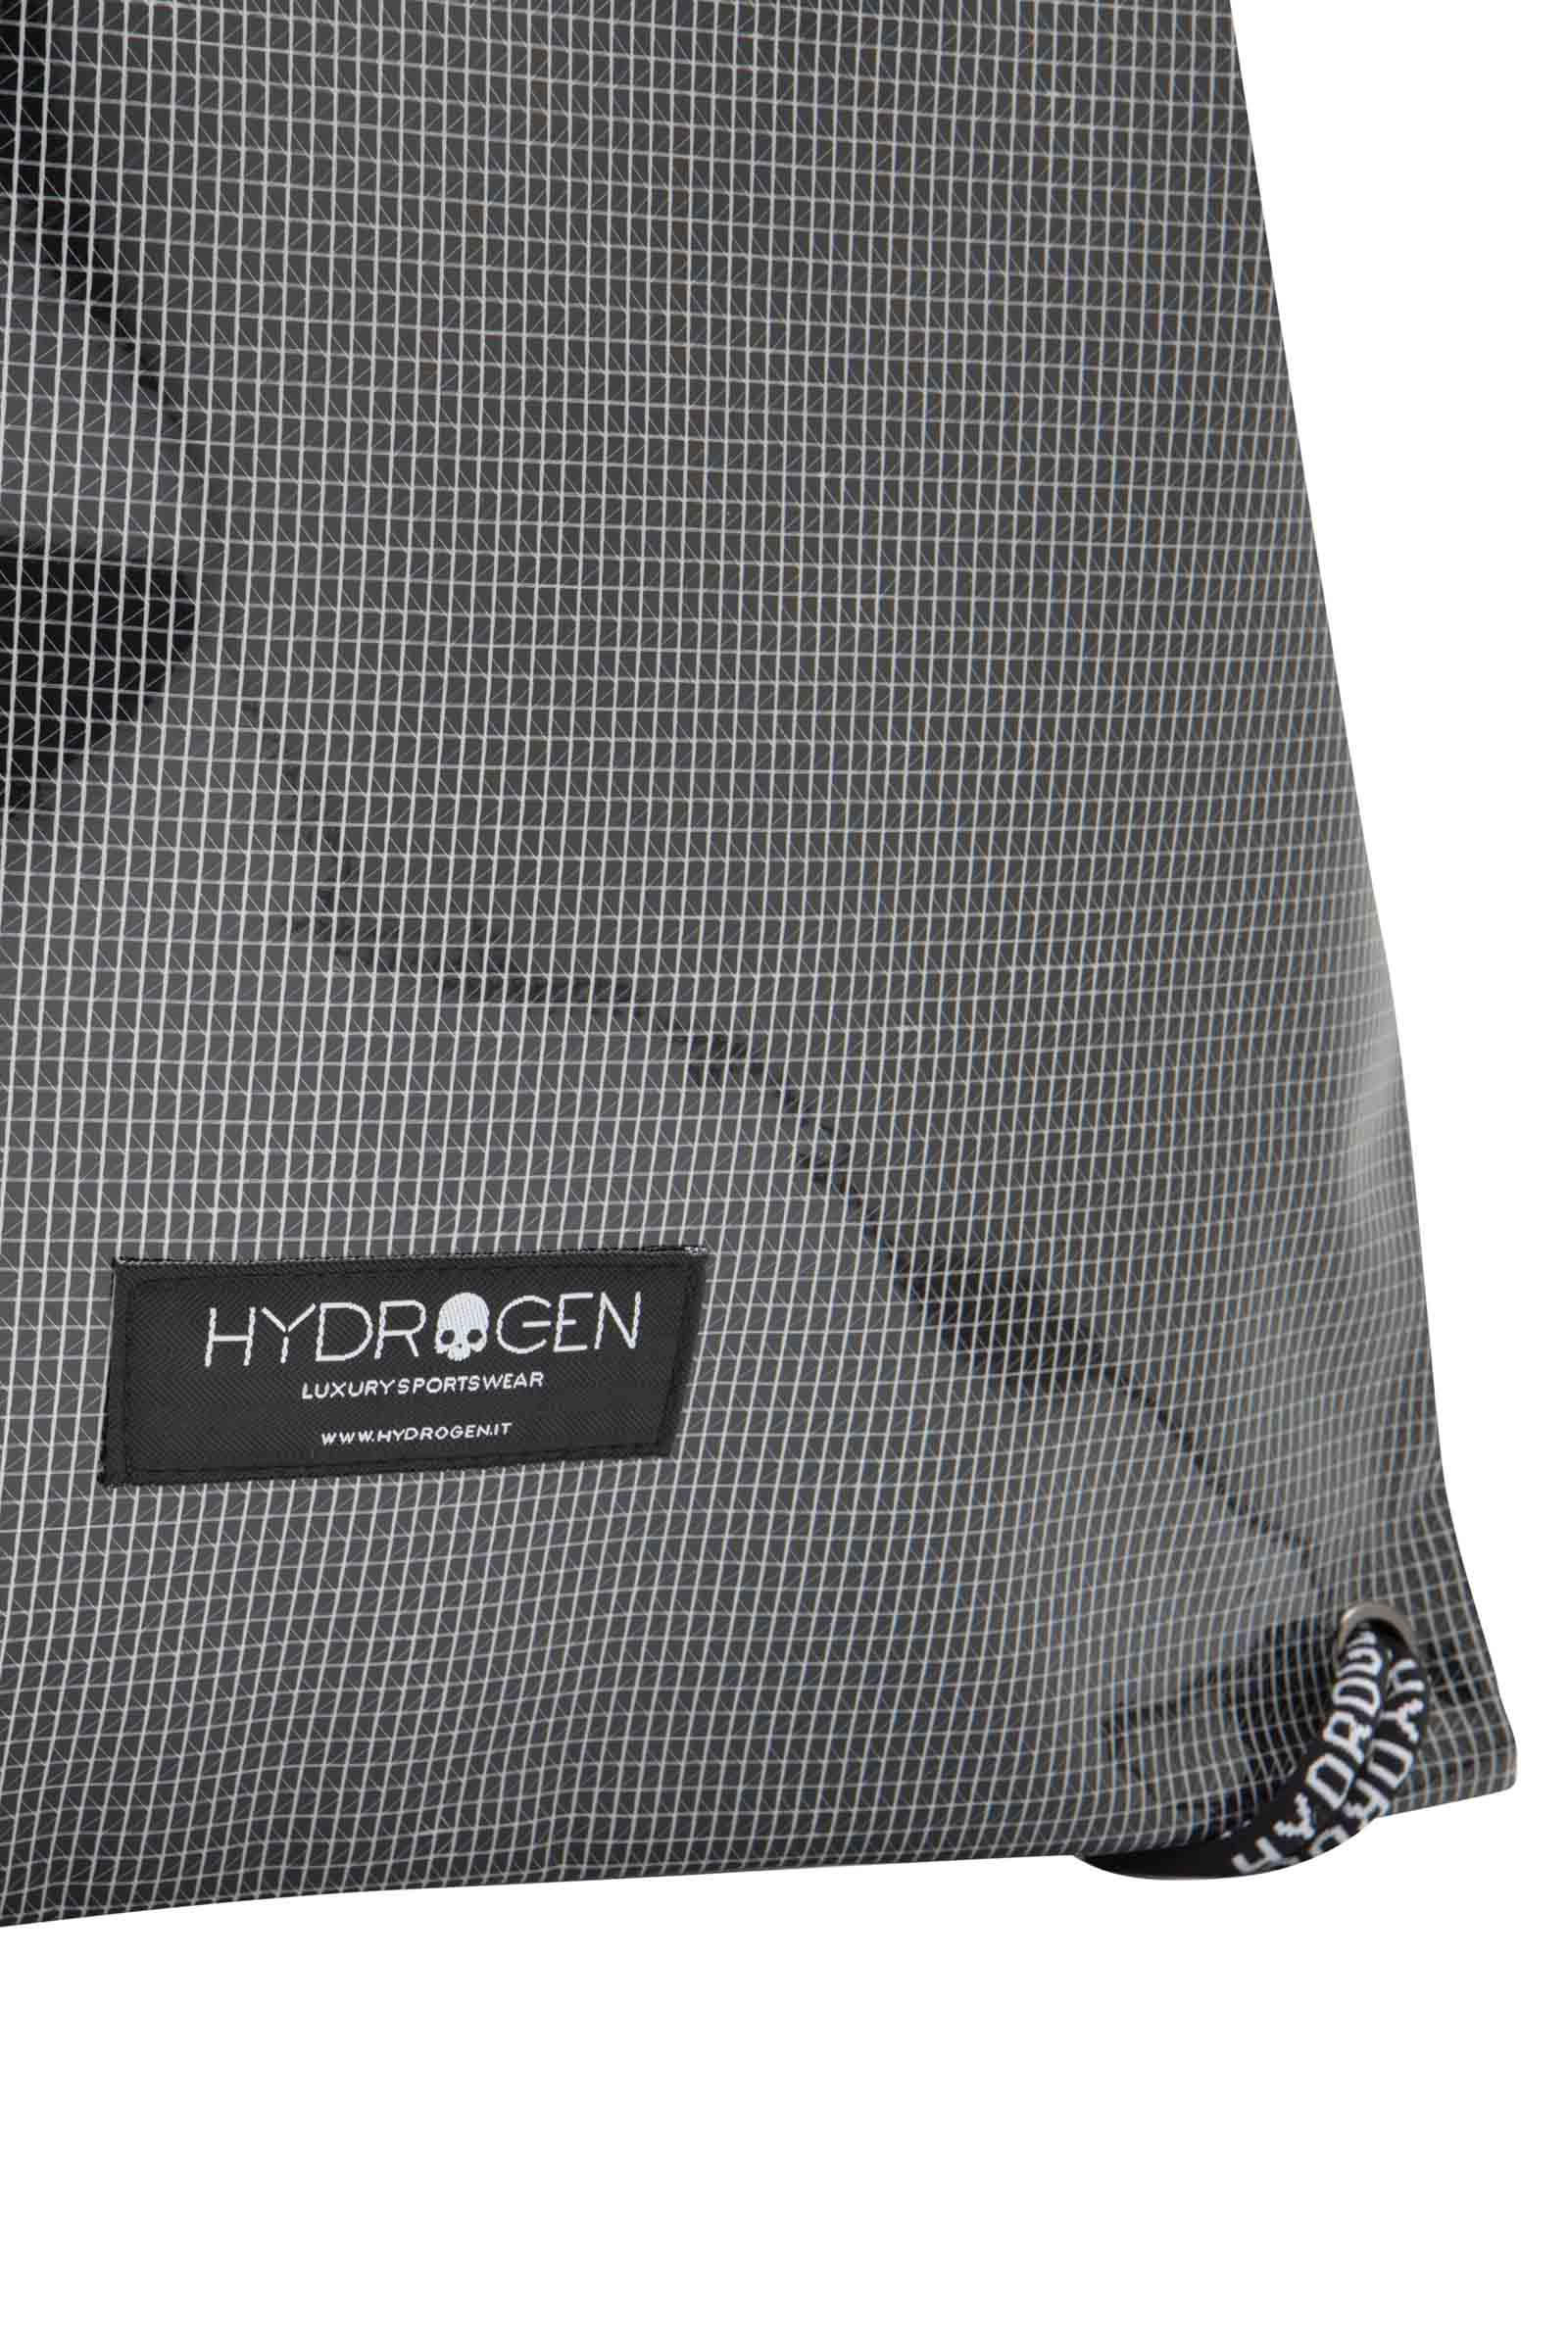 GYM BAG - Outlet Hydrogen - Abbigliamento sportivo